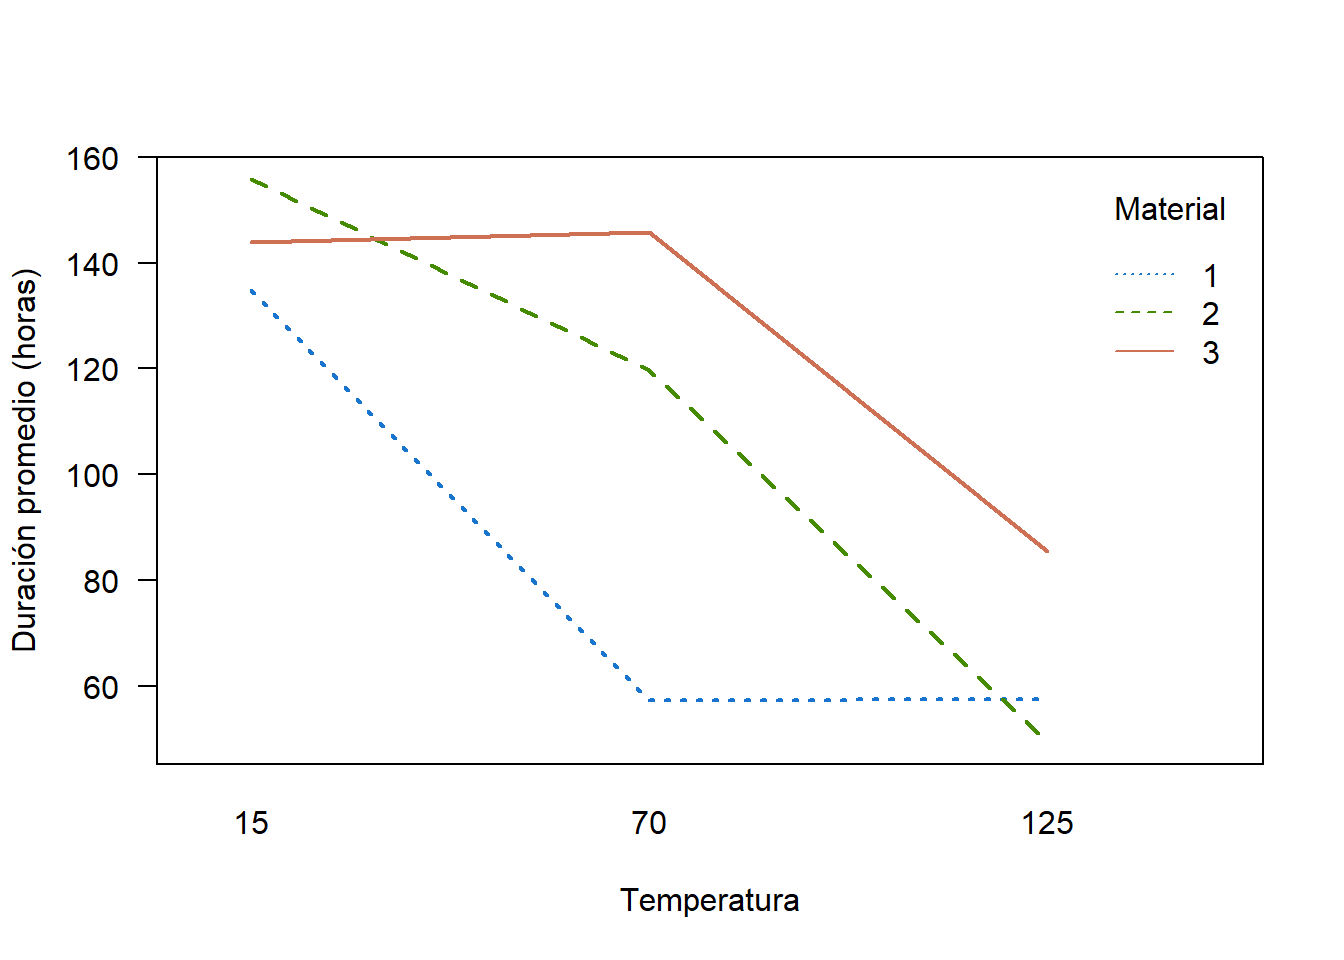 Gráfico de interacción entre Temperatura y Material sobre la duración promedio de las baterías.